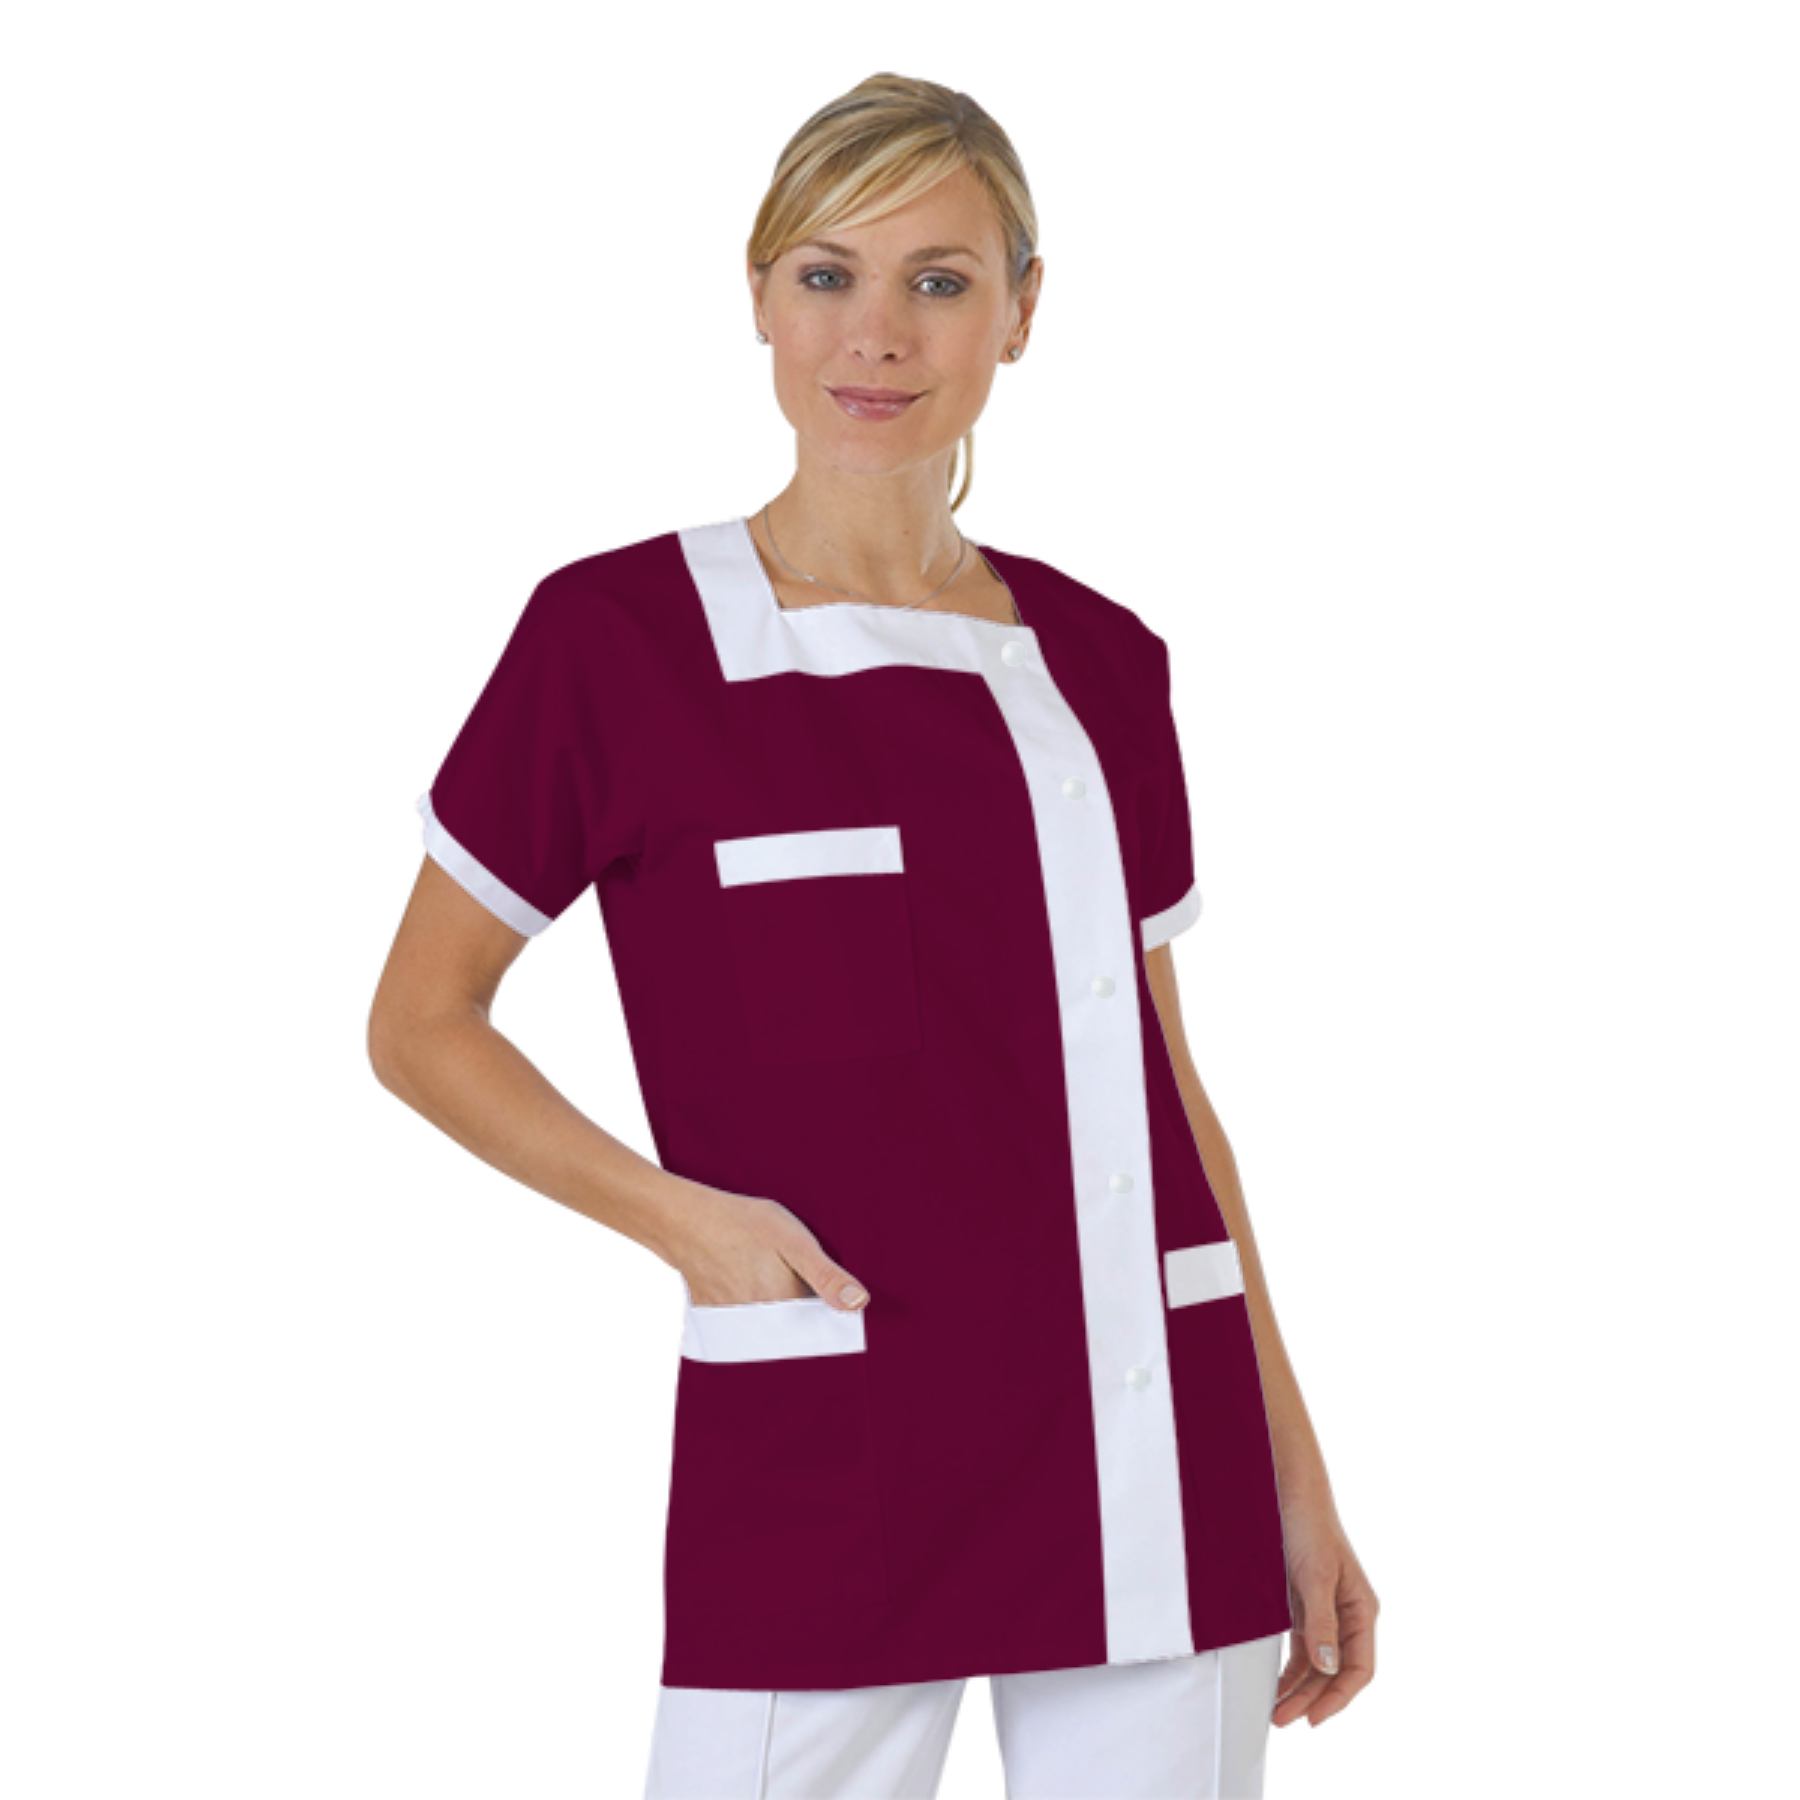 blouse-medicale-col-carre-a-personnaliser acheté - par Aurore - le 08-07-2019